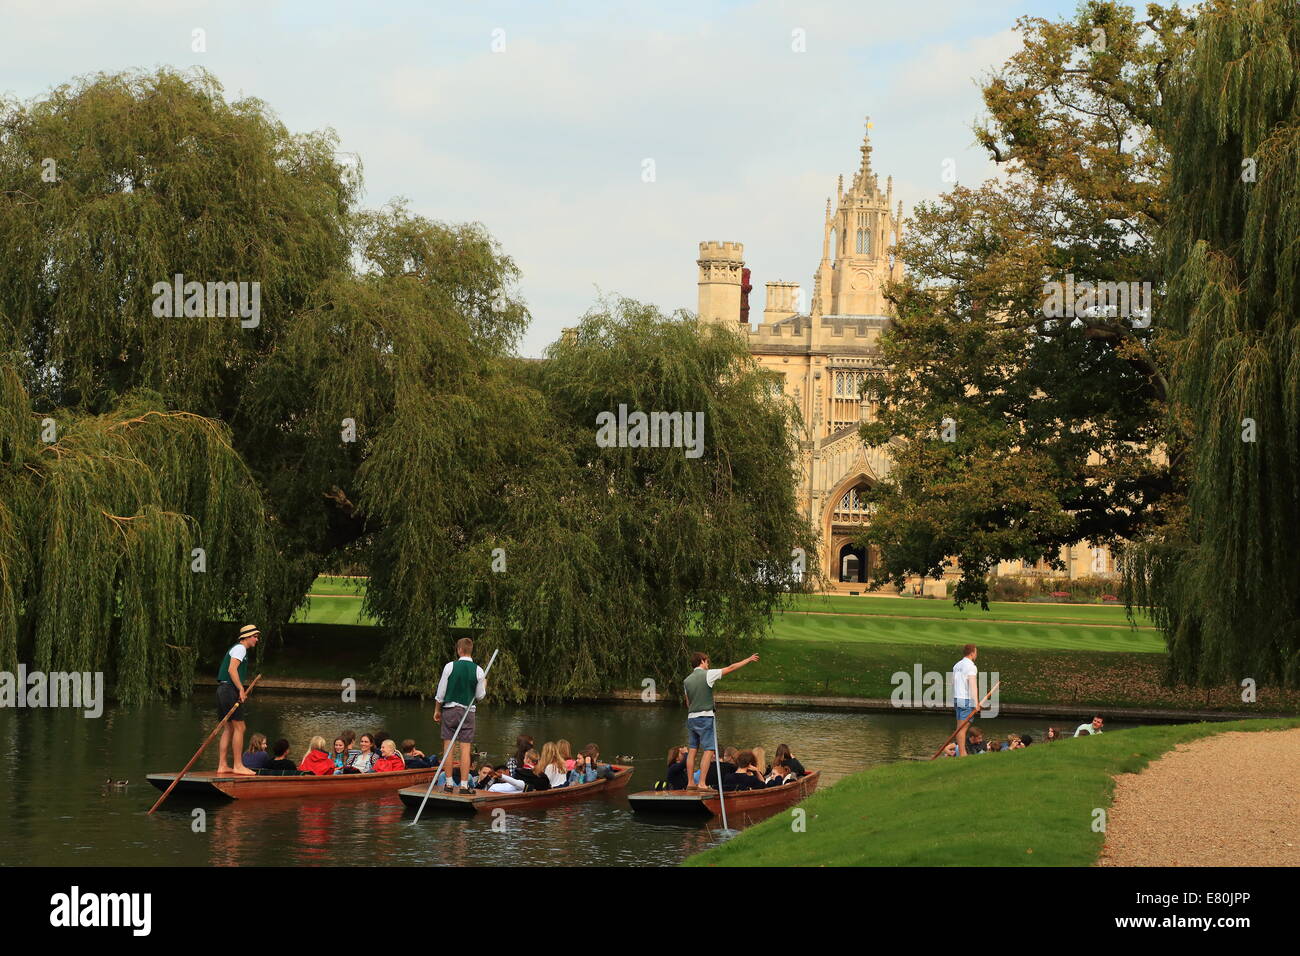 Stechkahn fahren vor Str. Johns Hochschule, Cambridge, UK. Stockfoto